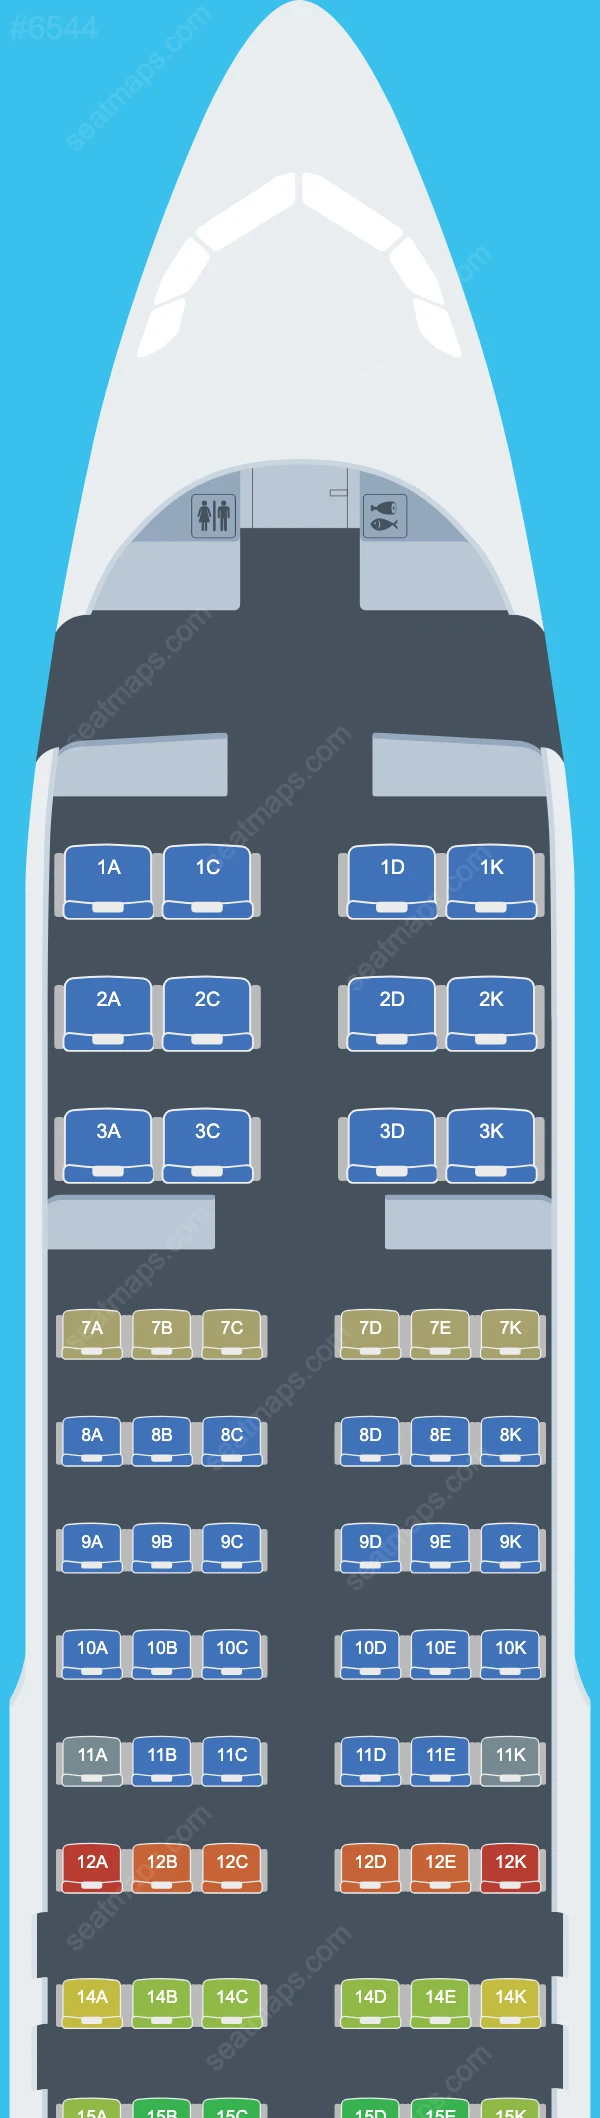 Avianca Ecuador Airbus A320 Plan de Salle A320-200 V.1